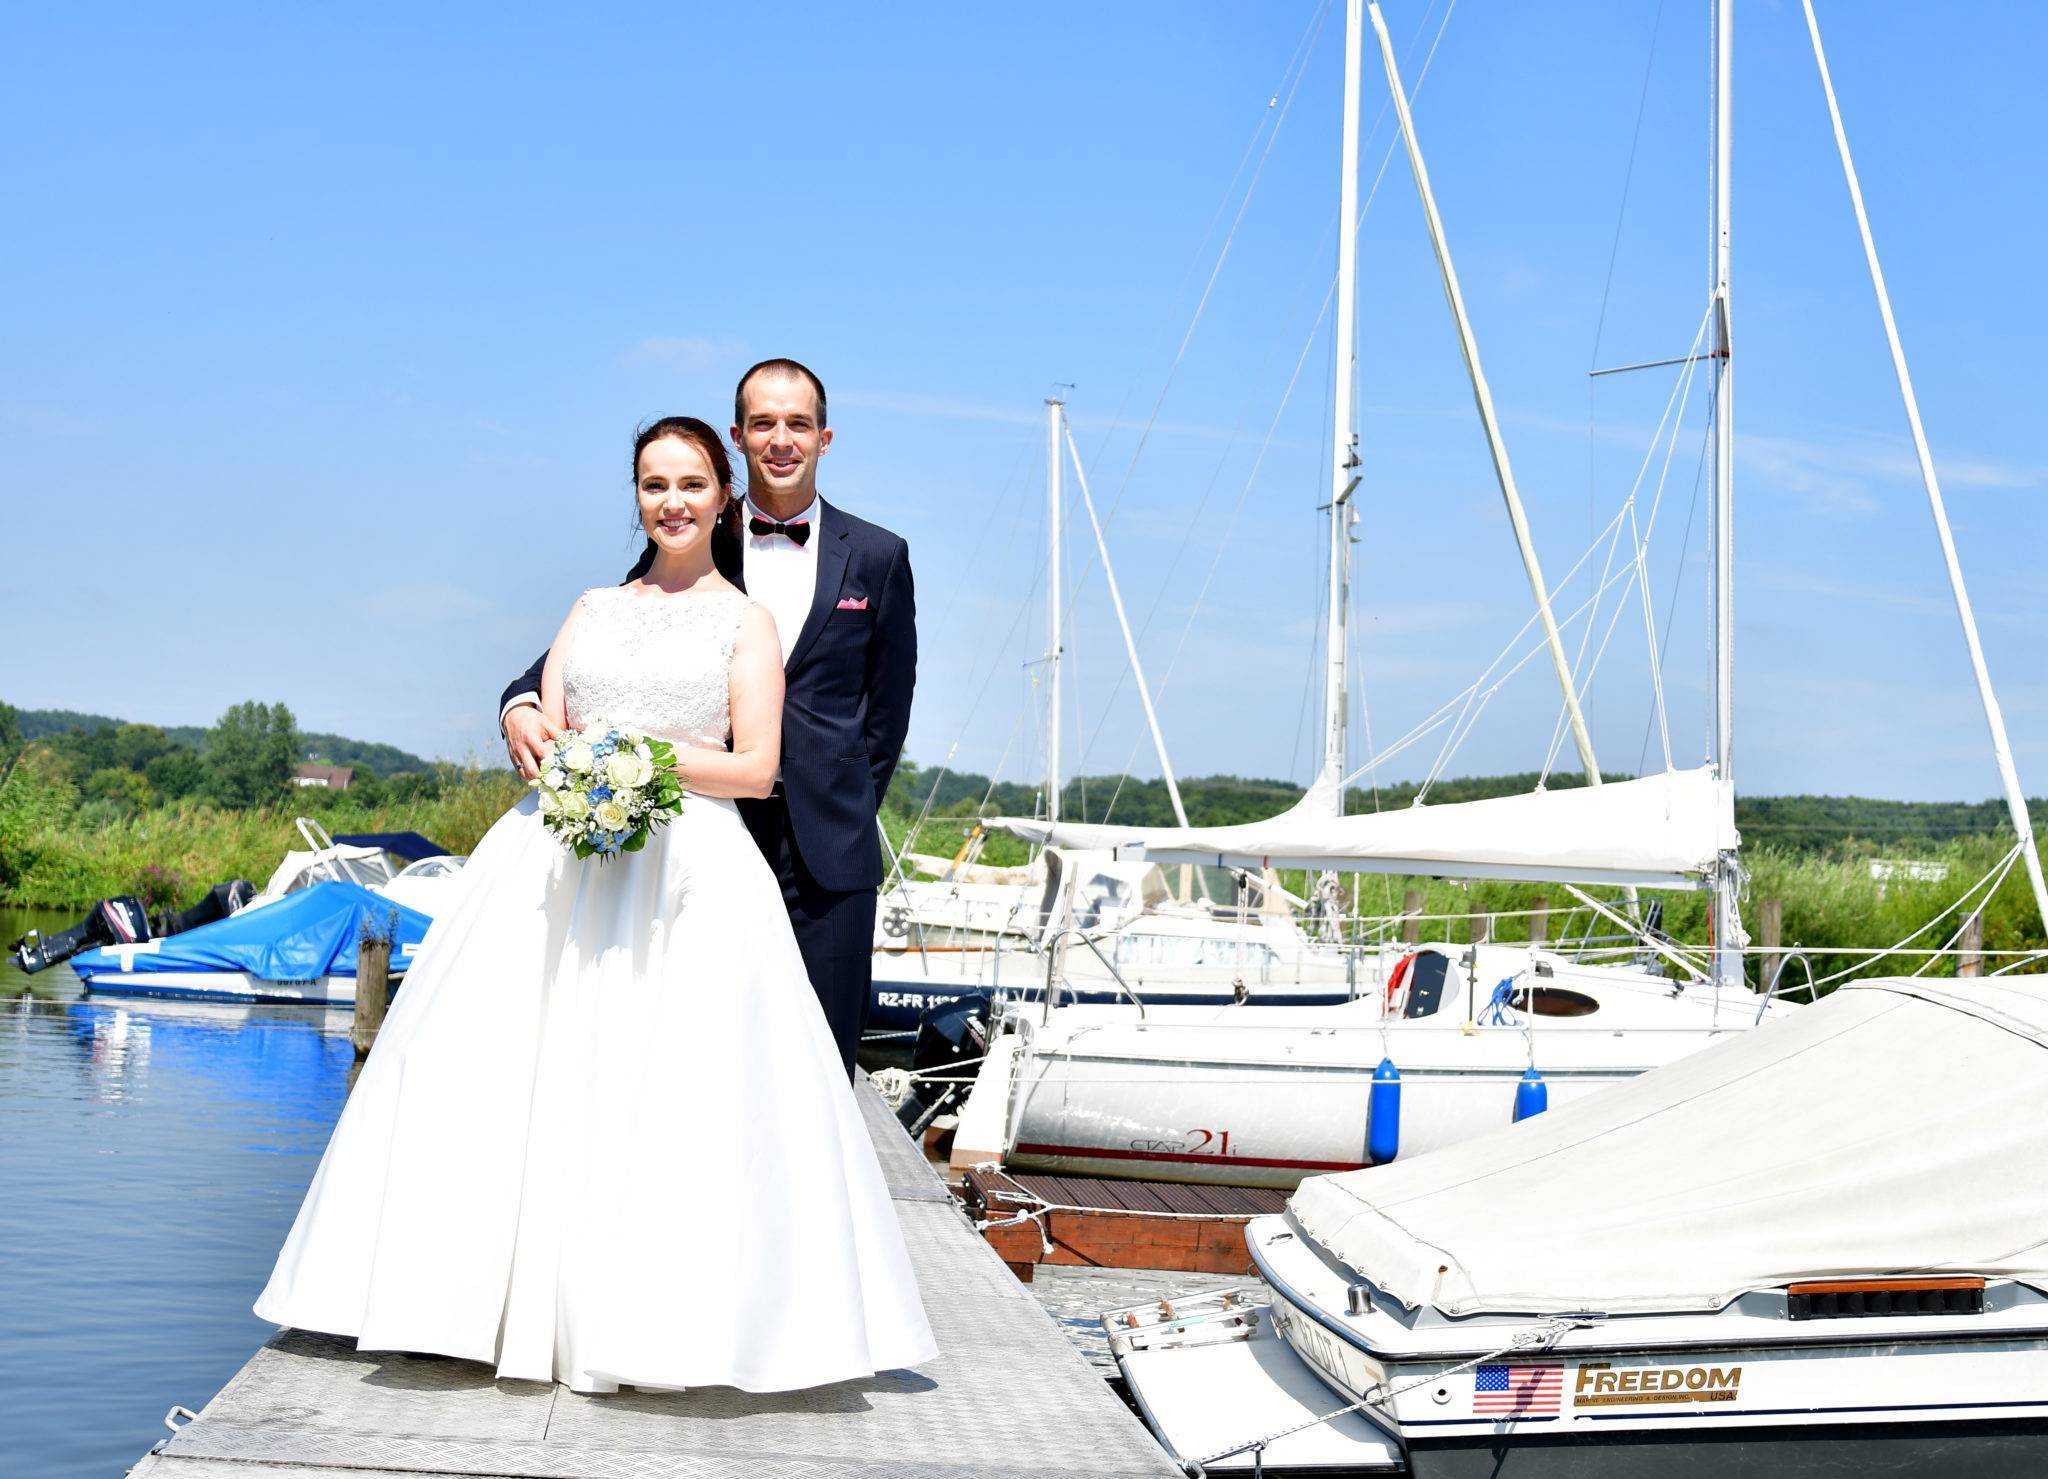 Brautpaar Fotoshooting am Yachthafen an der Elbe bei Marschacht bei Sonnenschein